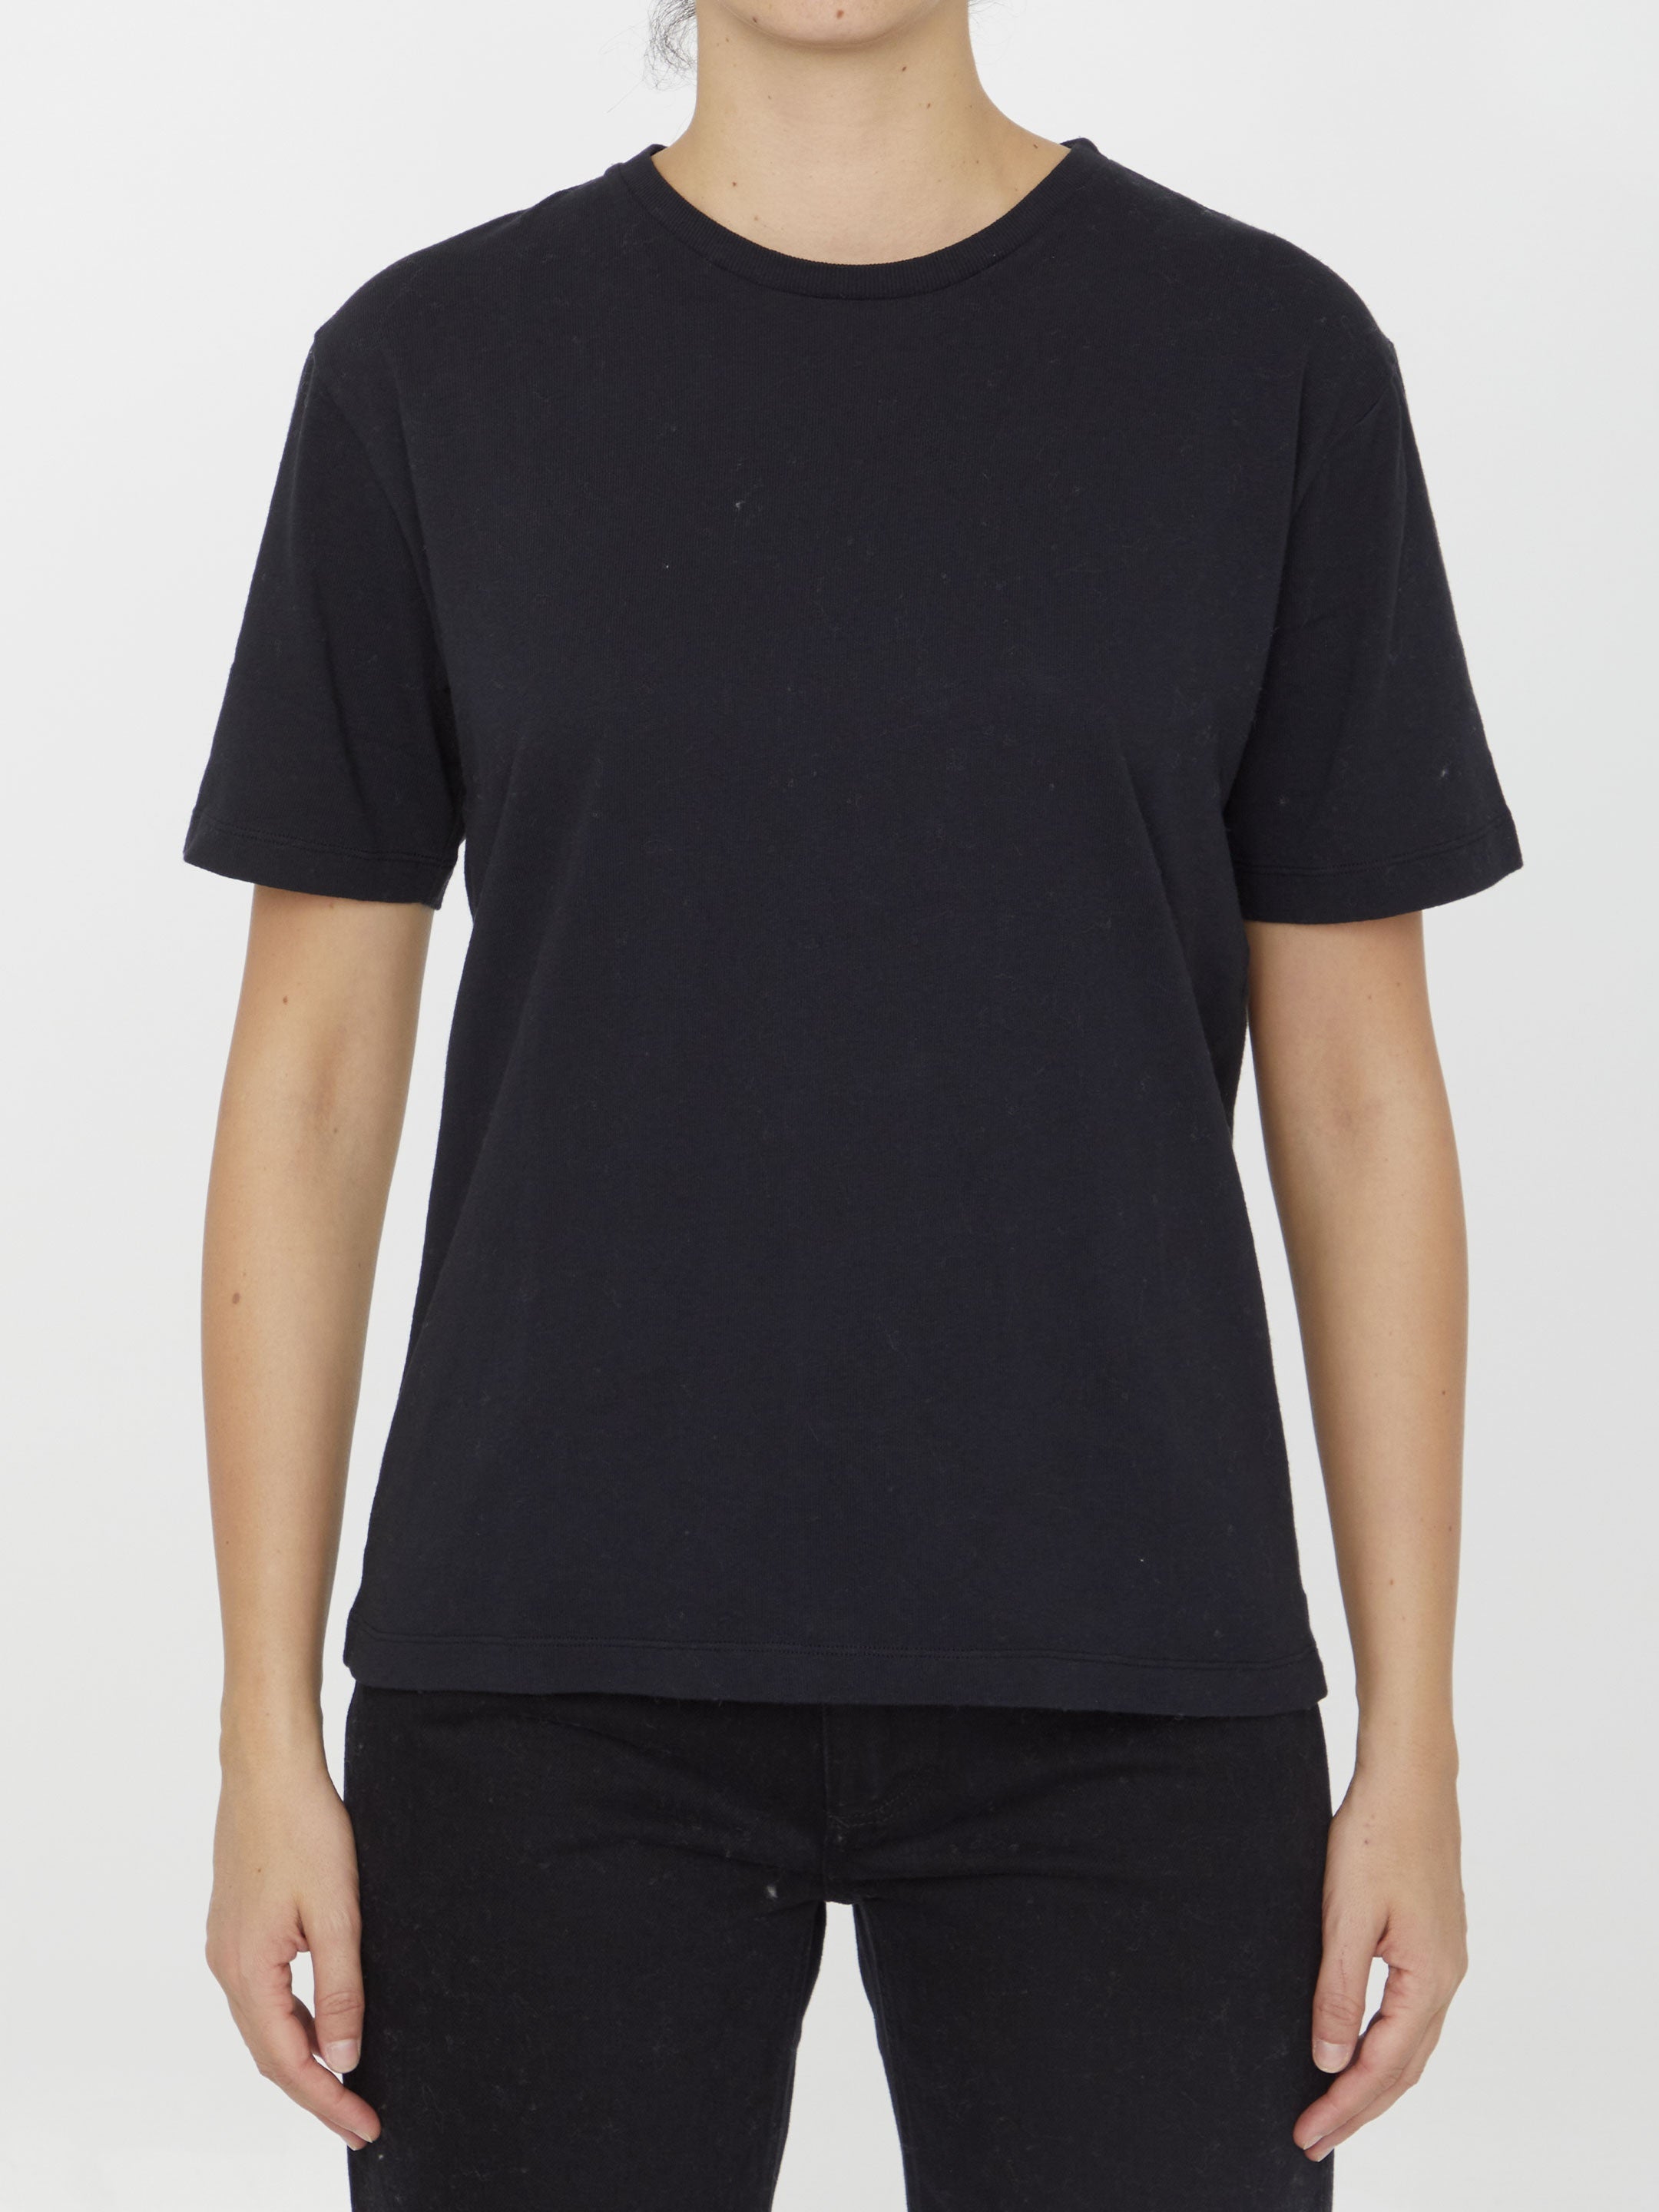 KHAITE-OUTLET-SALE-Mae-t-shirt-Shirts-M-BLACK-ARCHIVE-COLLECTION.jpg